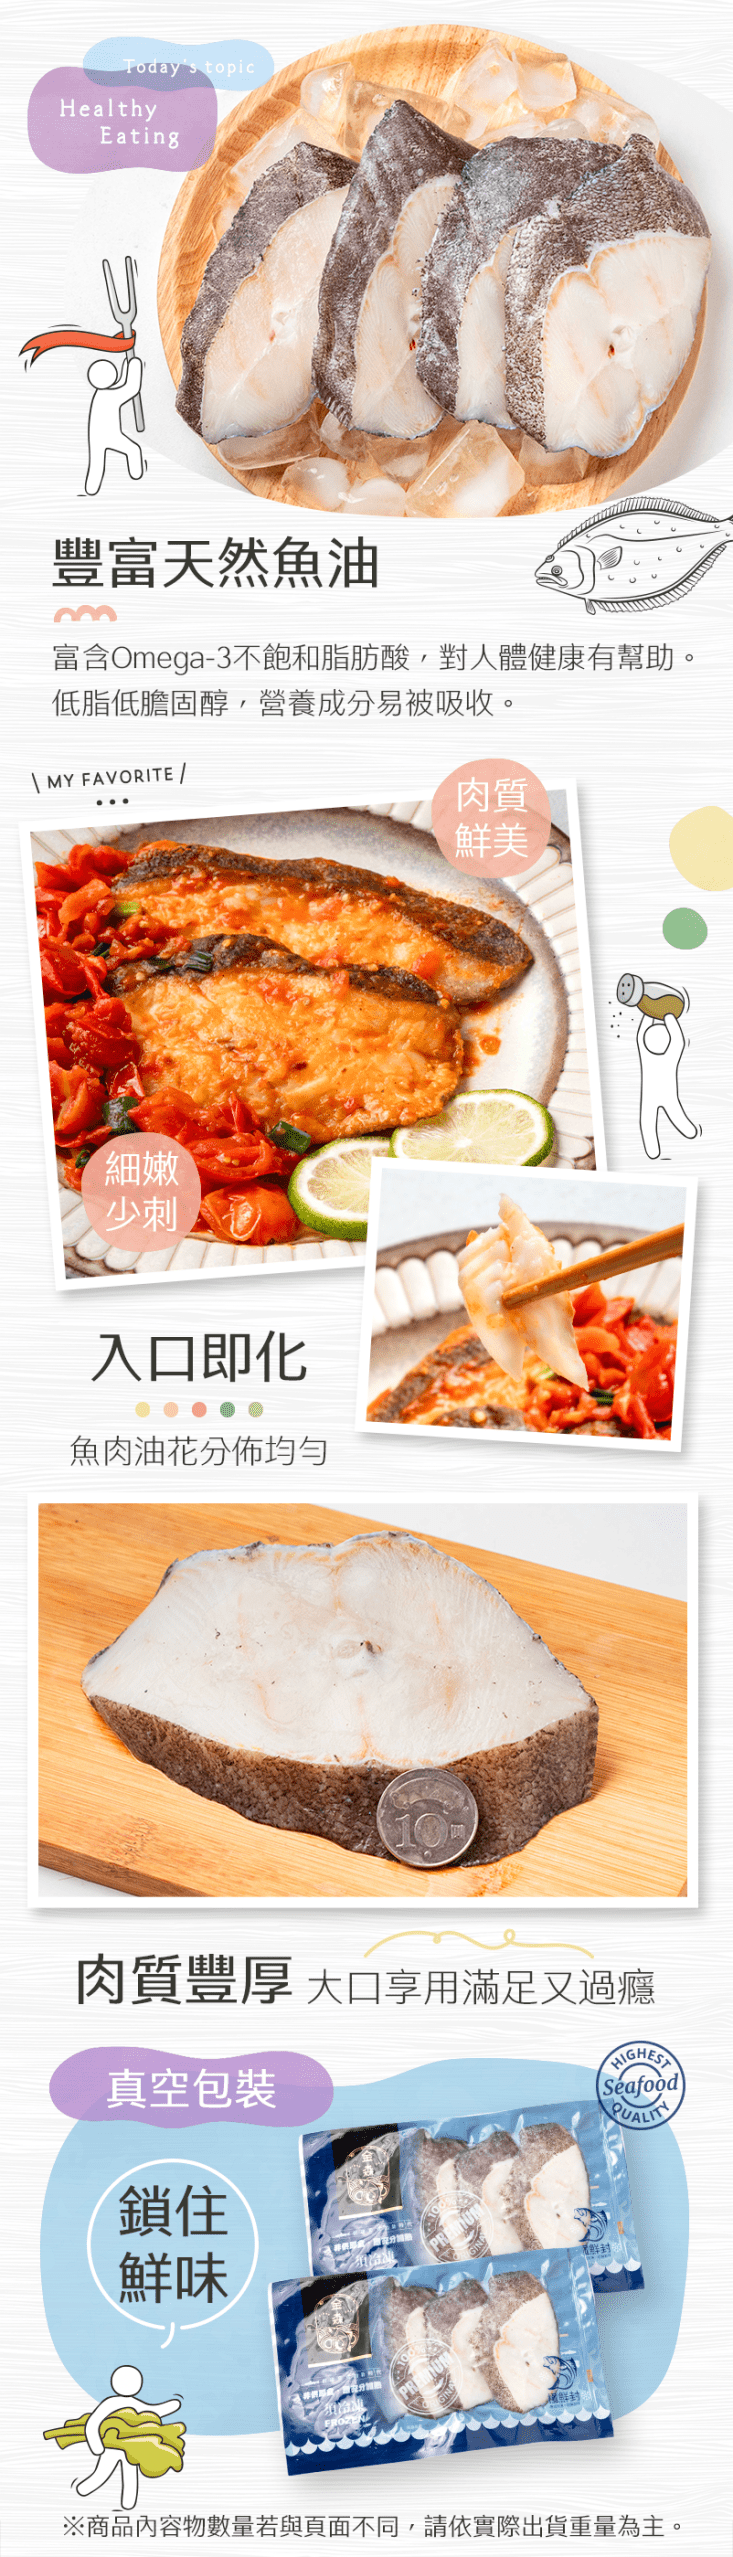 【生活好漁】嚴選速凍格陵蘭扁鱈切片(300g/包)贈調味鯖魚